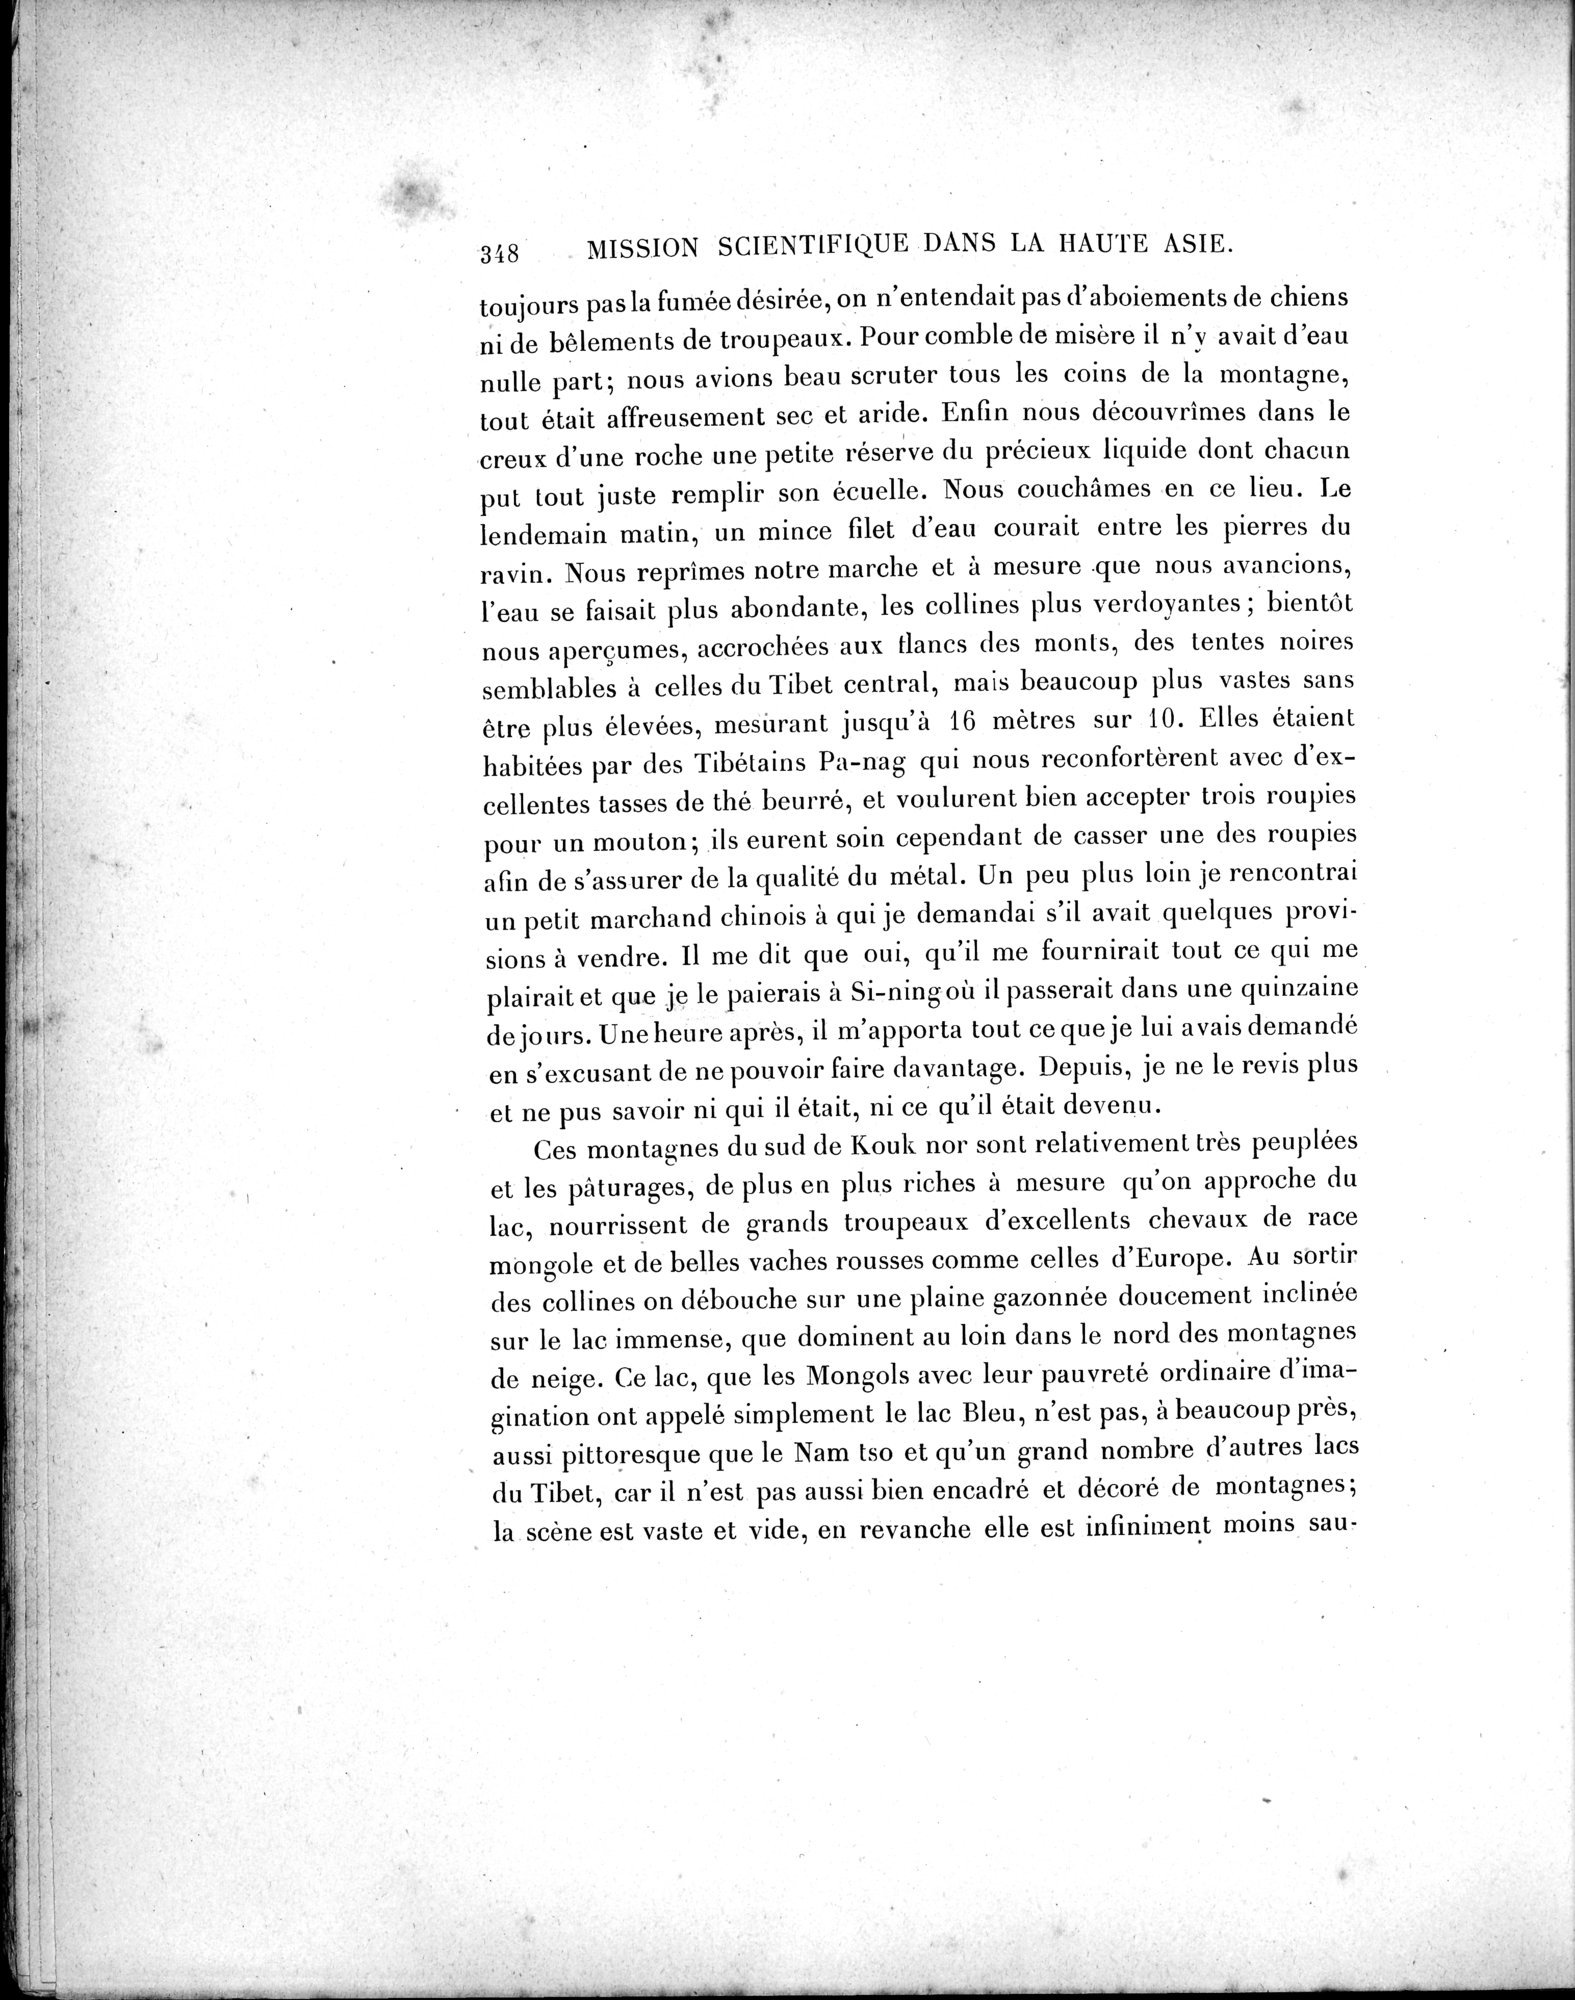 Mission Scientifique dans la Haute Asie 1890-1895 : vol.1 / Page 380 (Grayscale High Resolution Image)